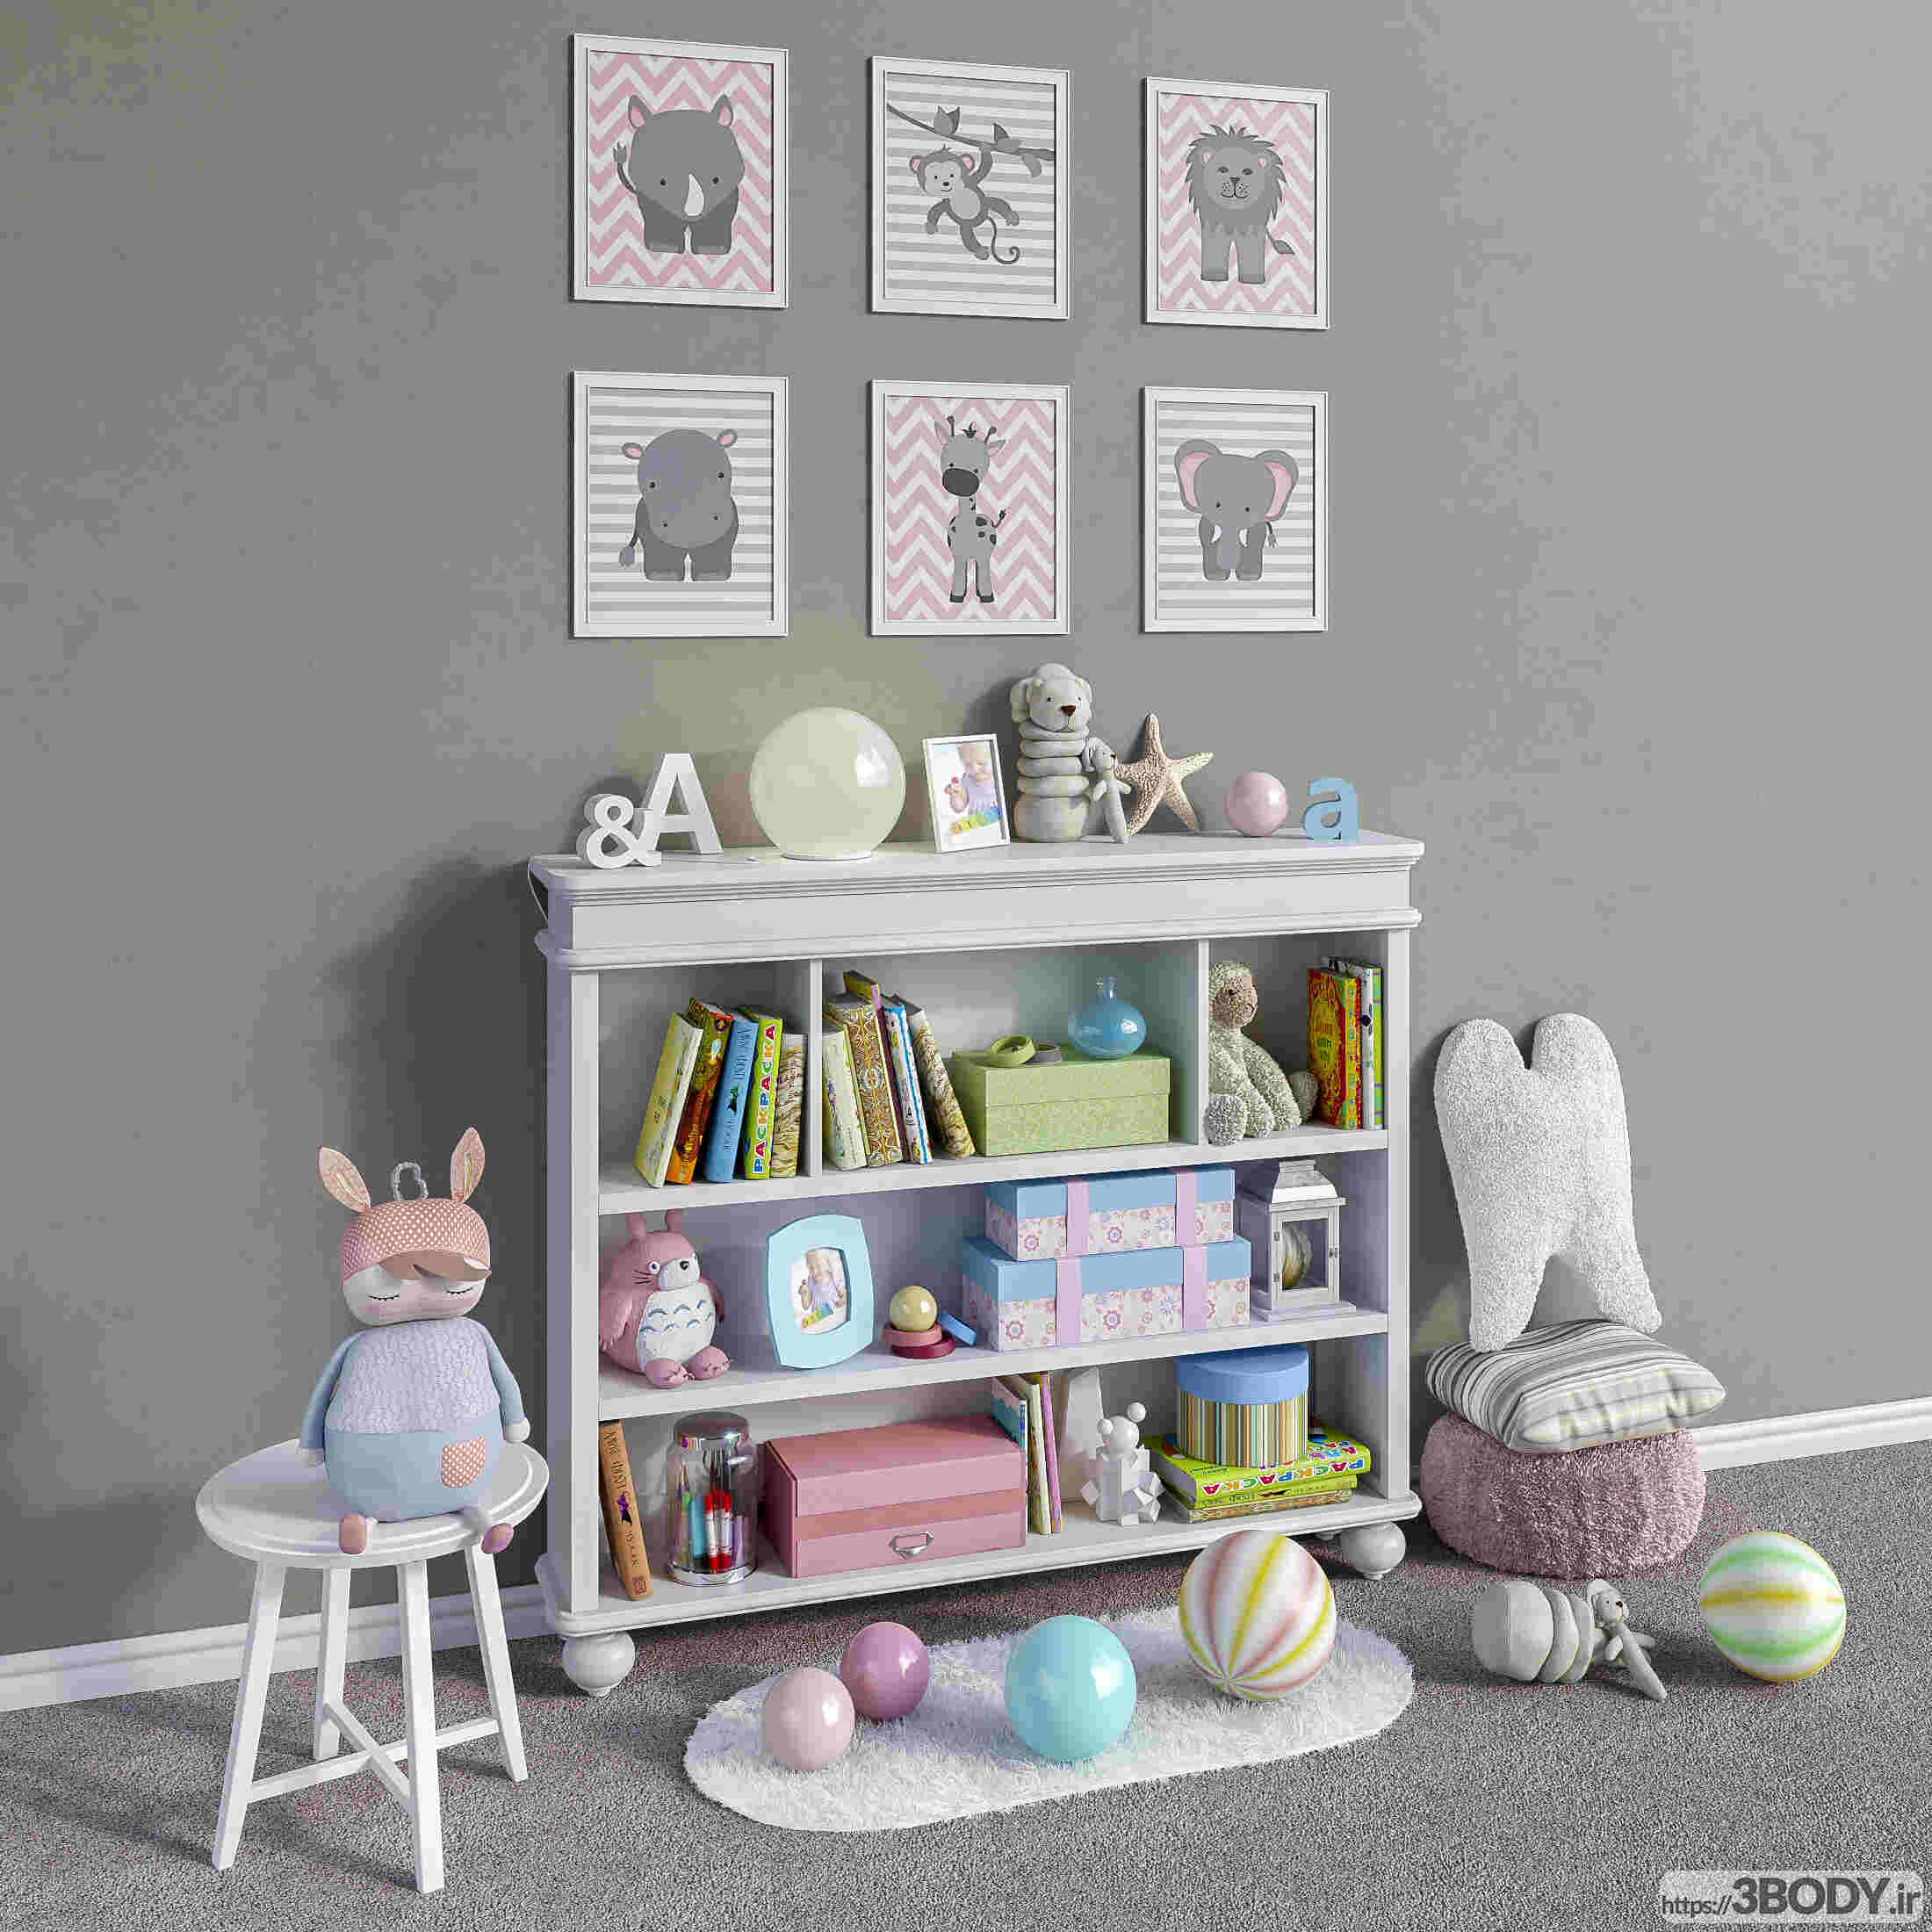 ابجکت ۳ بعدی اتاق کودک لوازم جانبی مبلمان کلاسیک - مجموعه دکوراسیون و اسباب بازی ها - 1 عکس 2